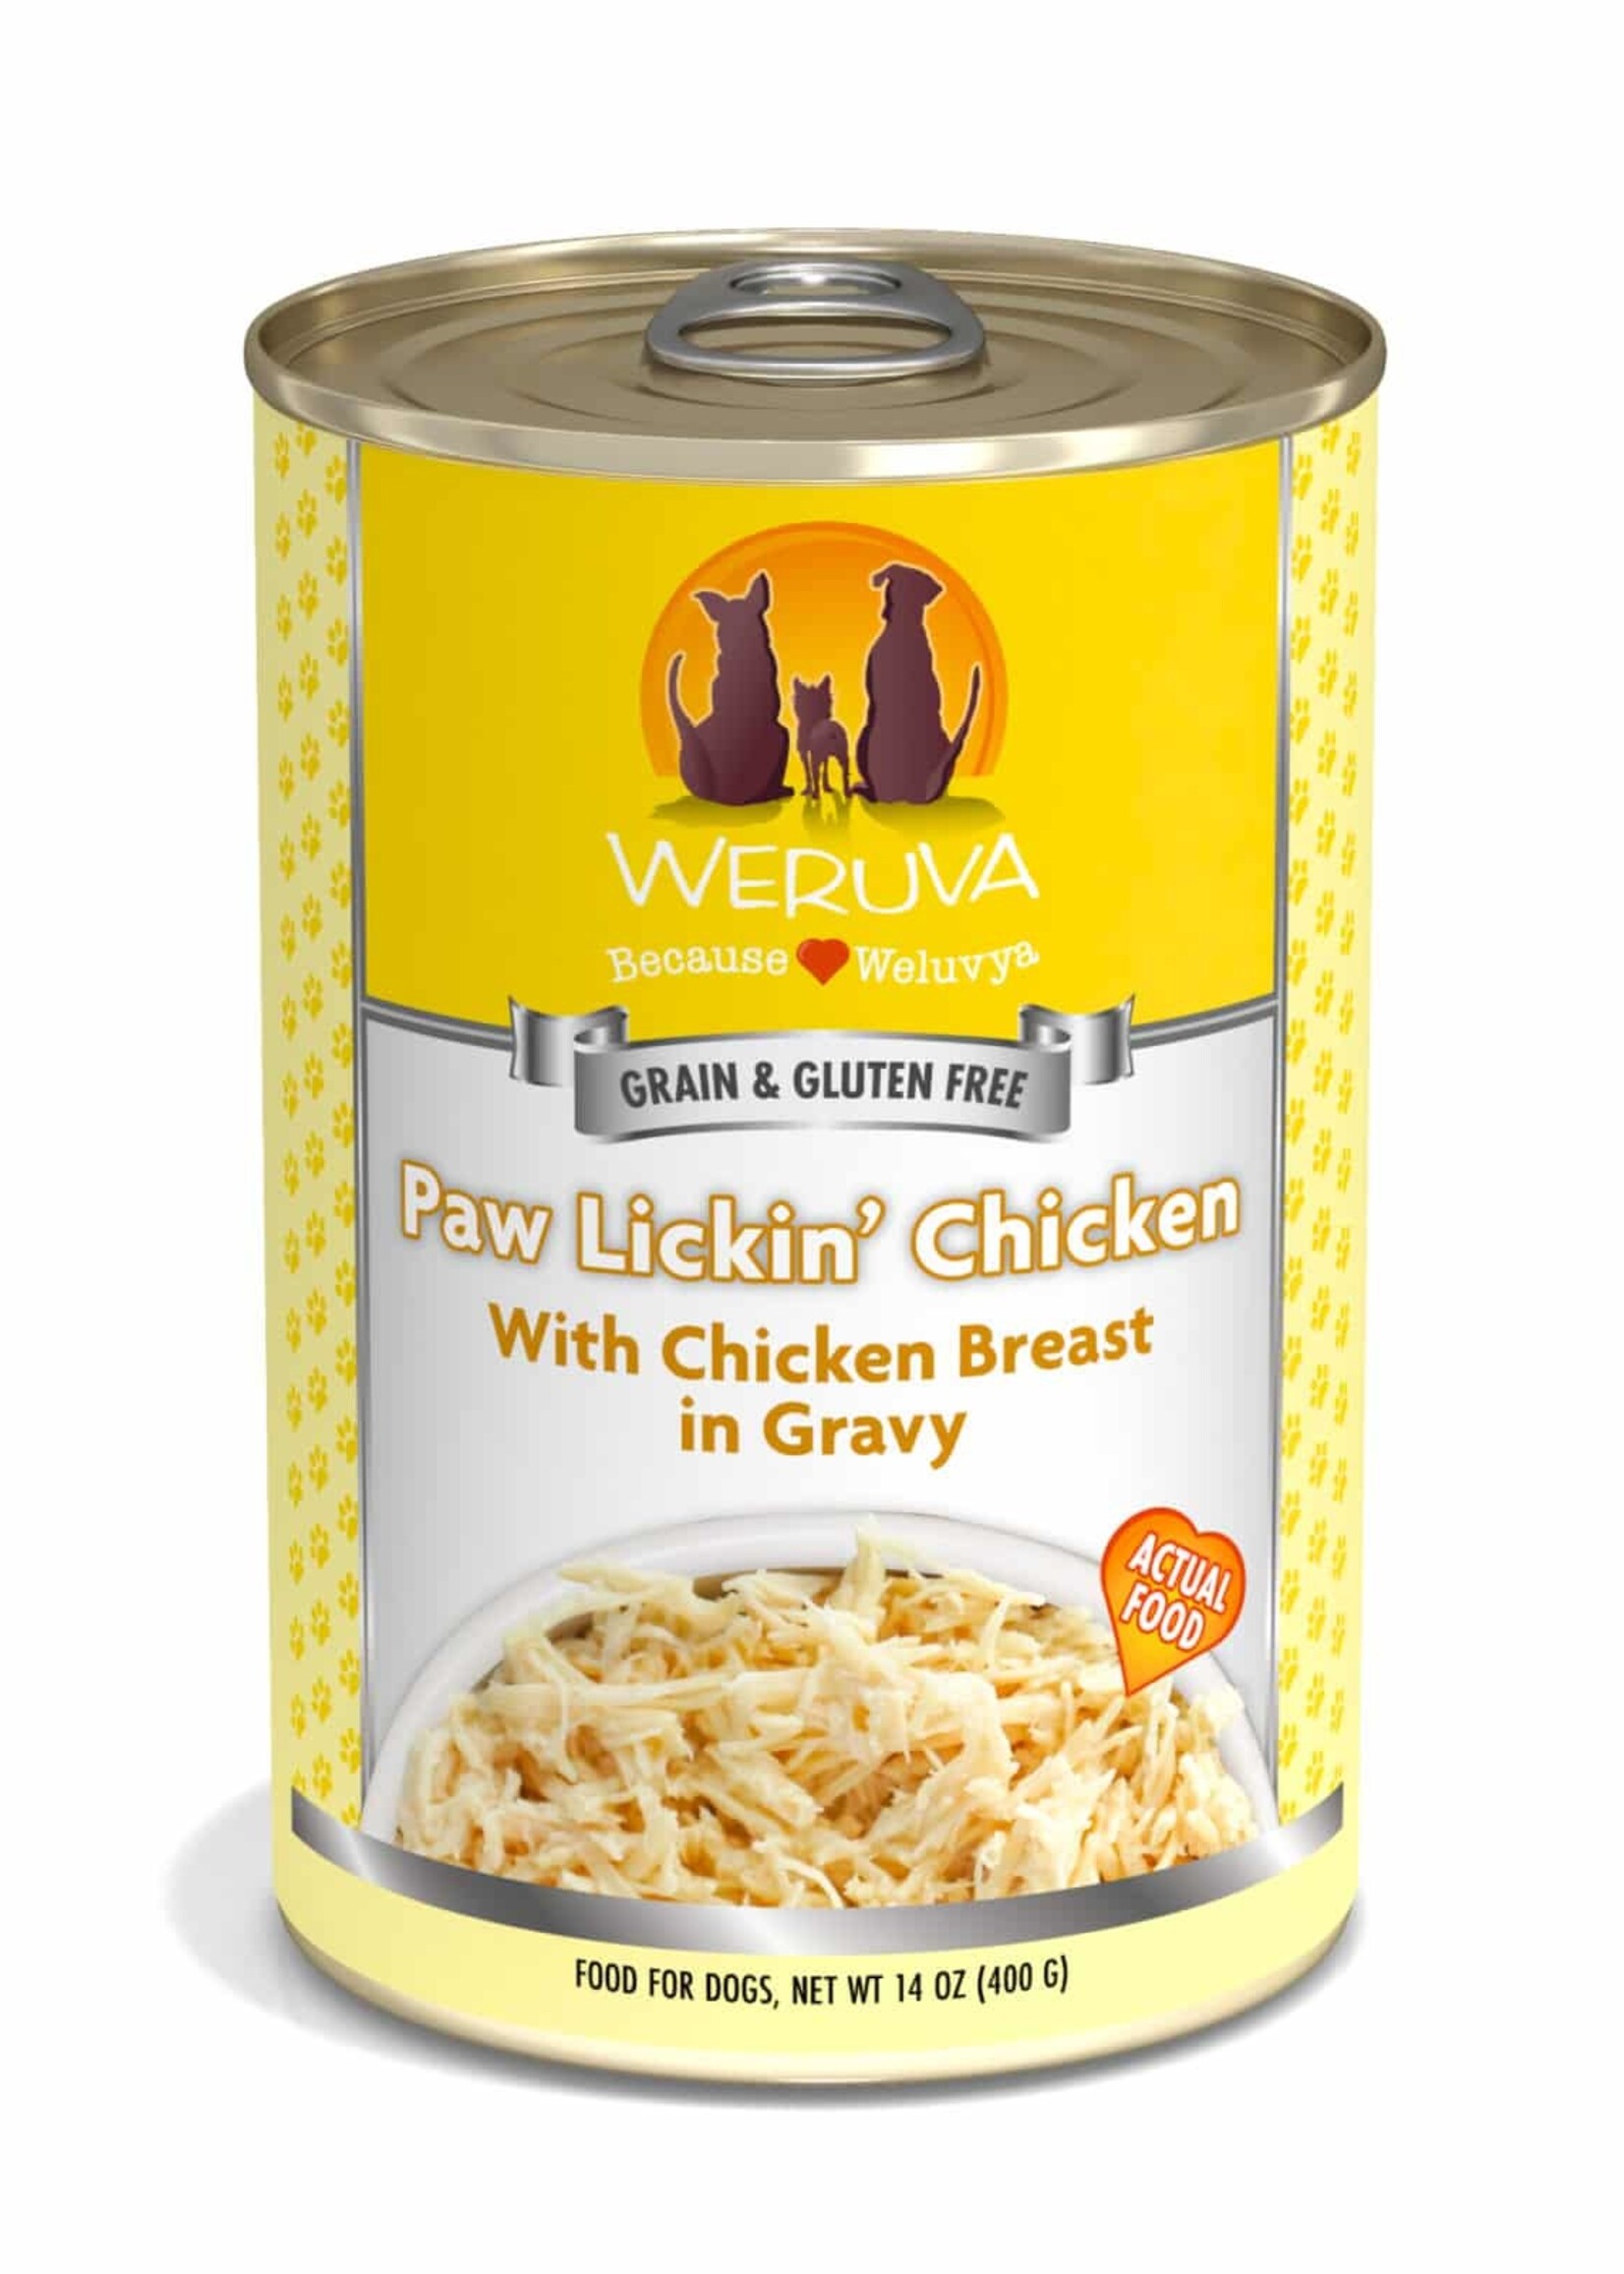 Weruva Paw Lickin' Chicken with Chicken Breast in Gravy Wet Dog Food